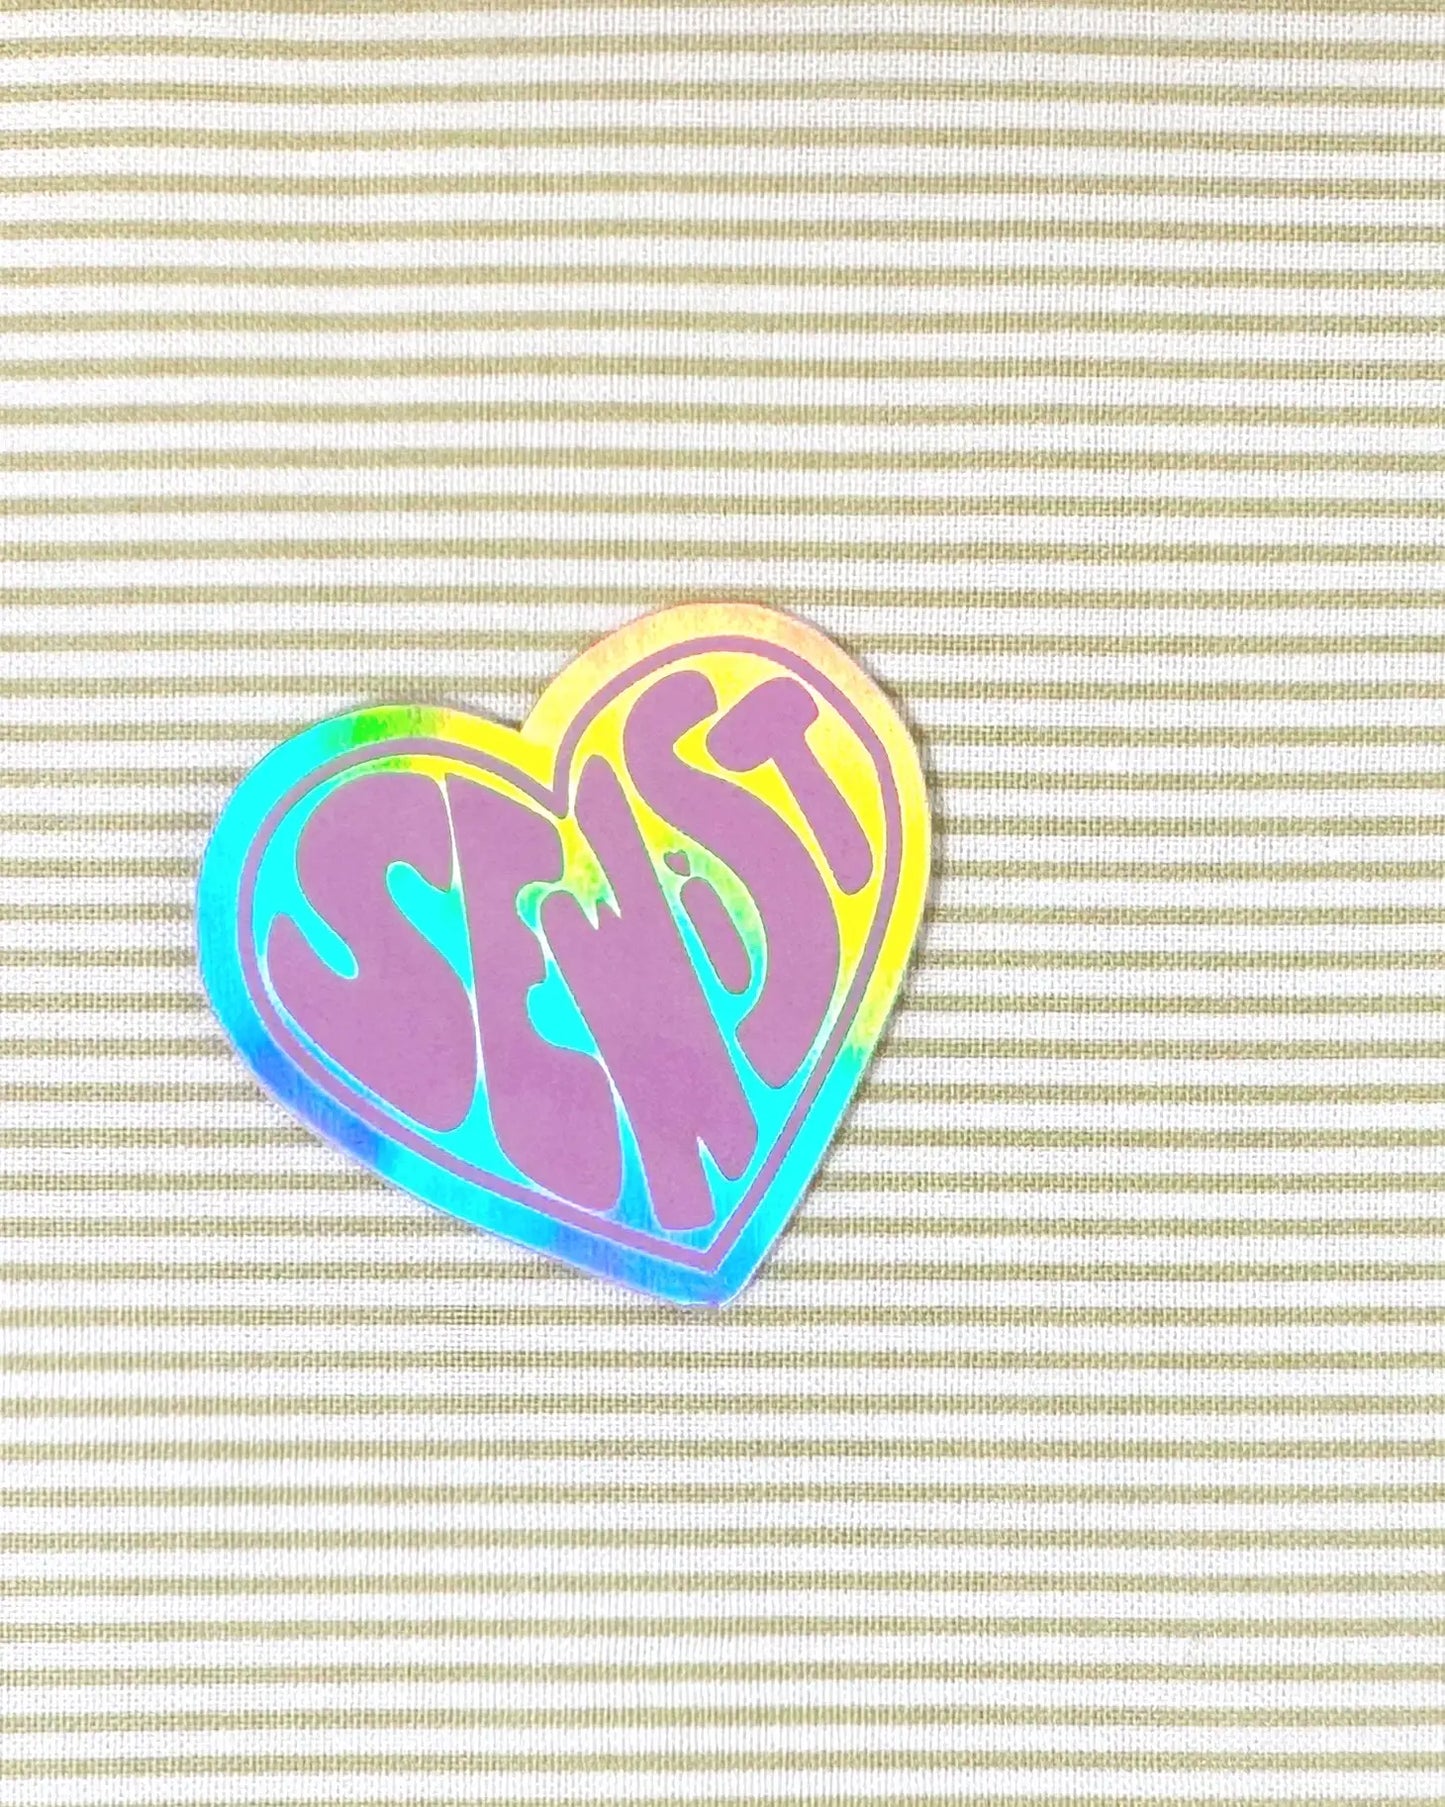 Sewist ✿ Sticker ✿ Whipstitch Handmade